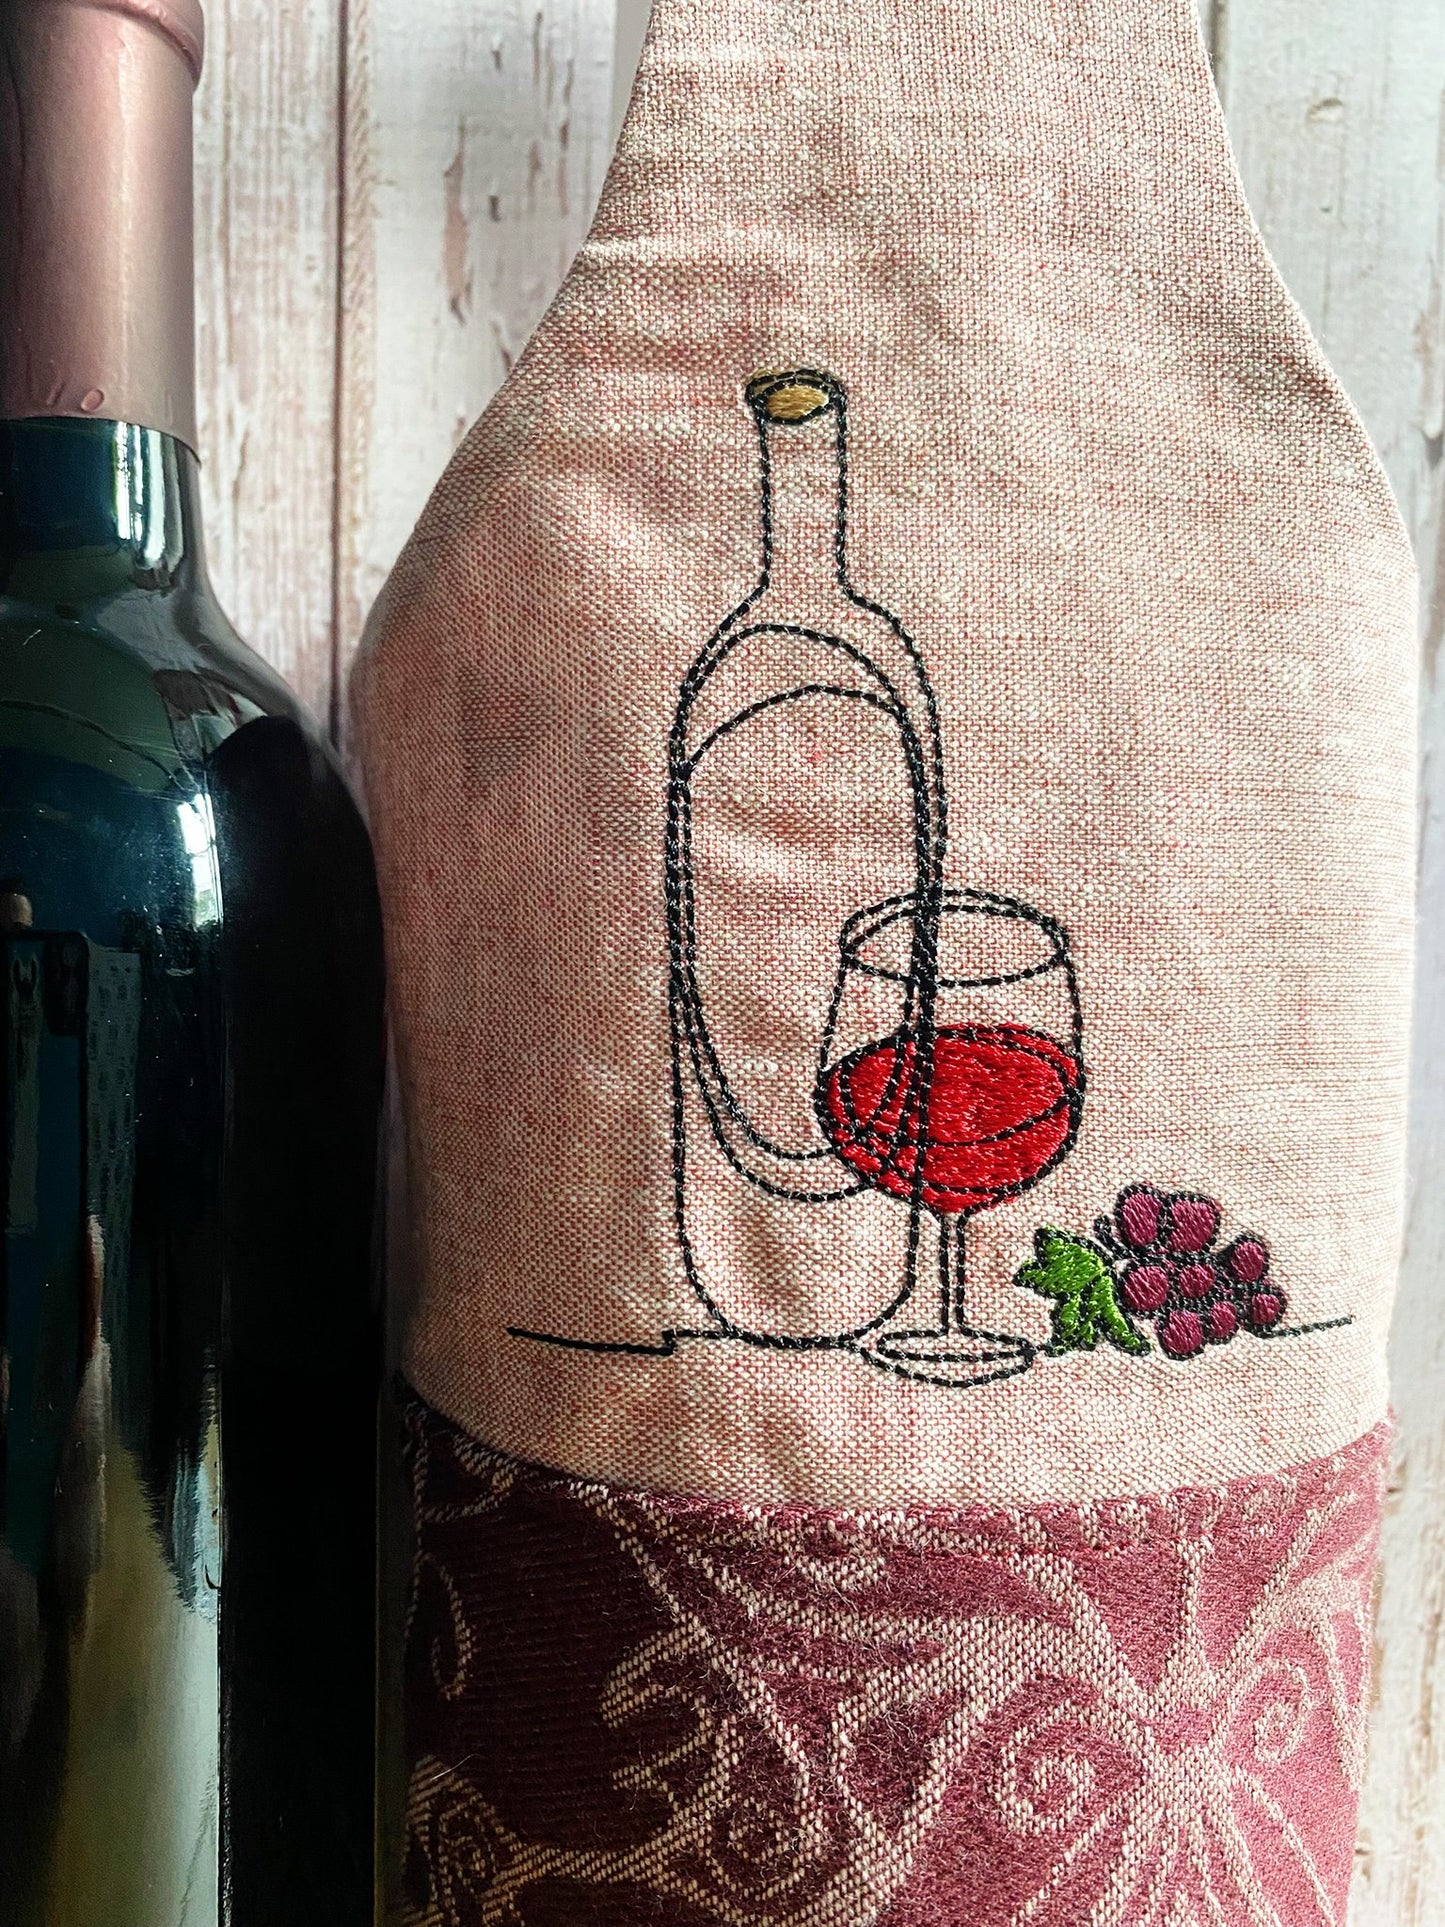 Vineyards Wine Bottle Tote